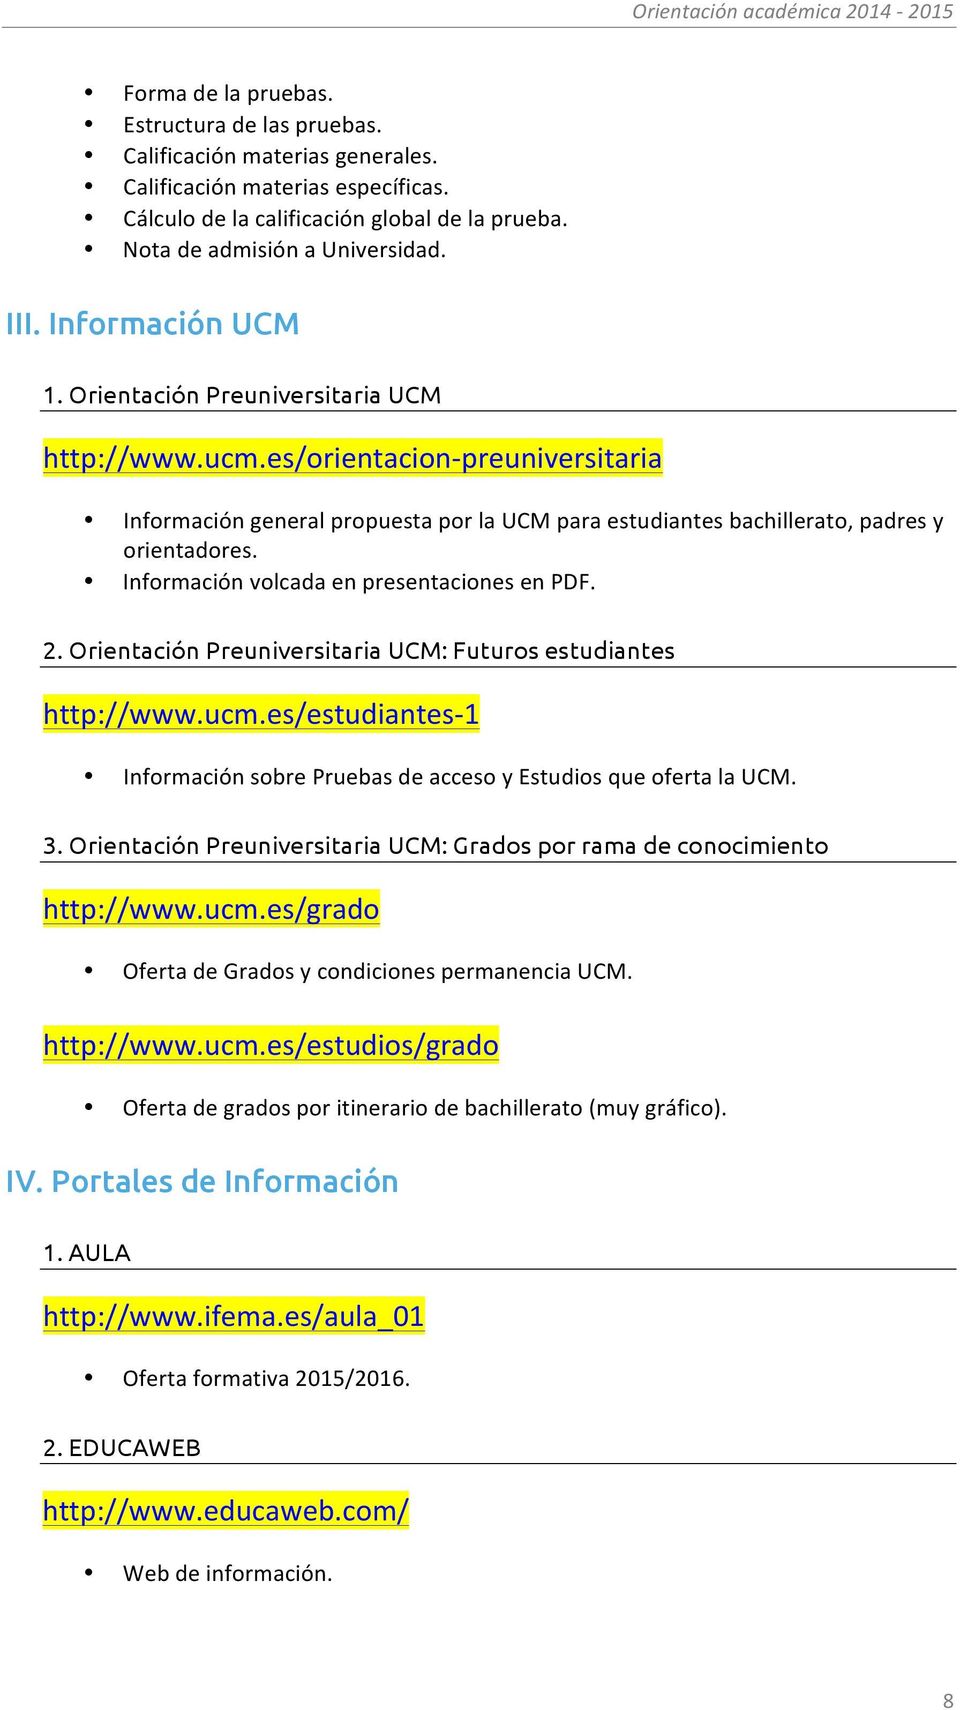 Información volcada en presentaciones en PDF. 2. Orientación Preuniversitaria UCM: Futuros estudiantes http://www.ucm.